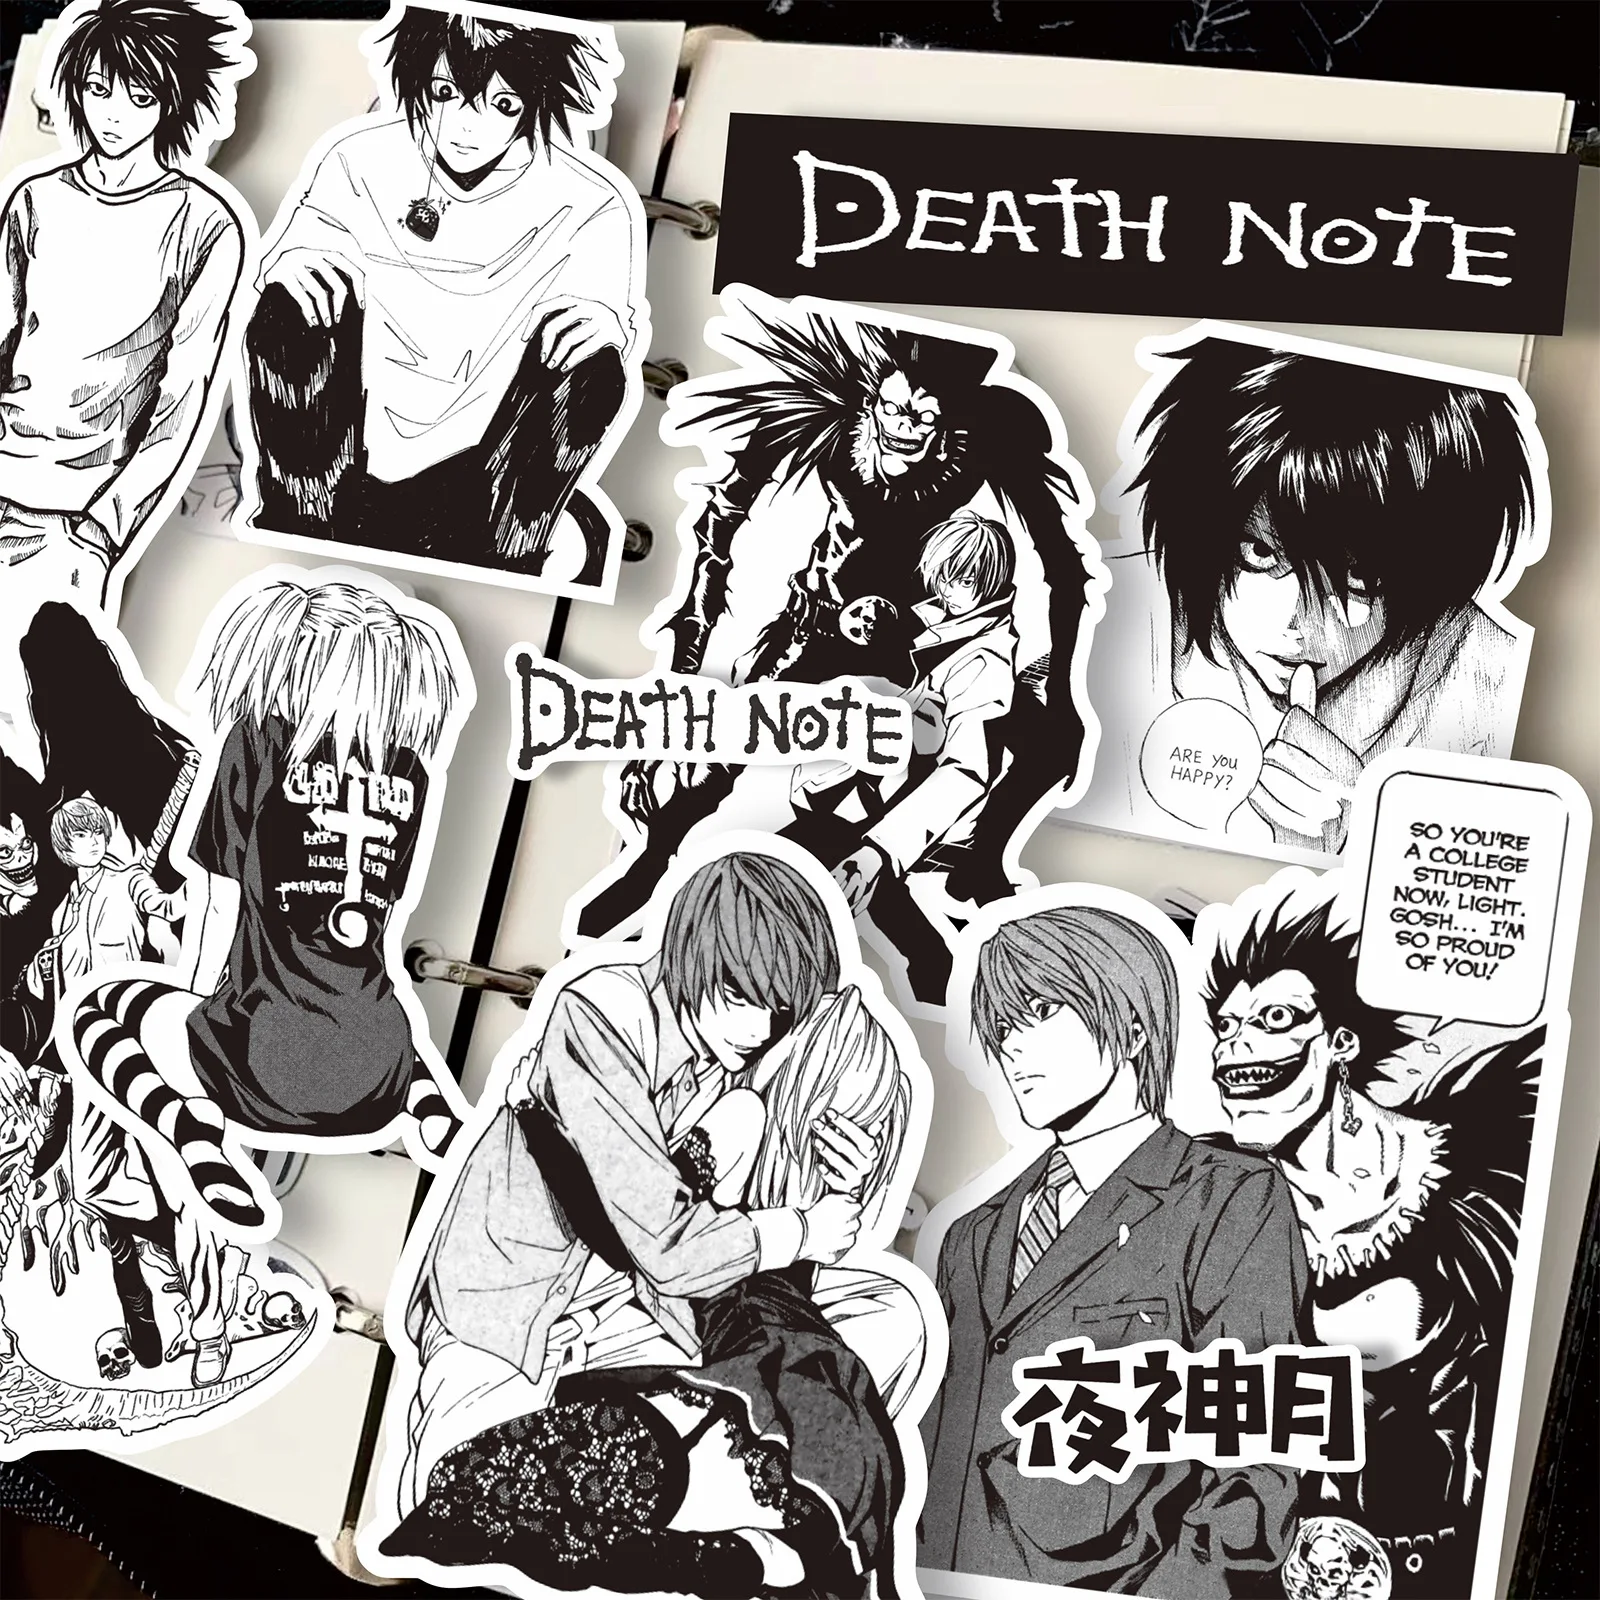 65 szt. DEATH NOTE Anime czarne białe naklejki Graffiti naklejki Scrapbooking notatnik bagaż Laptop deskorolka samochód dla dzieci